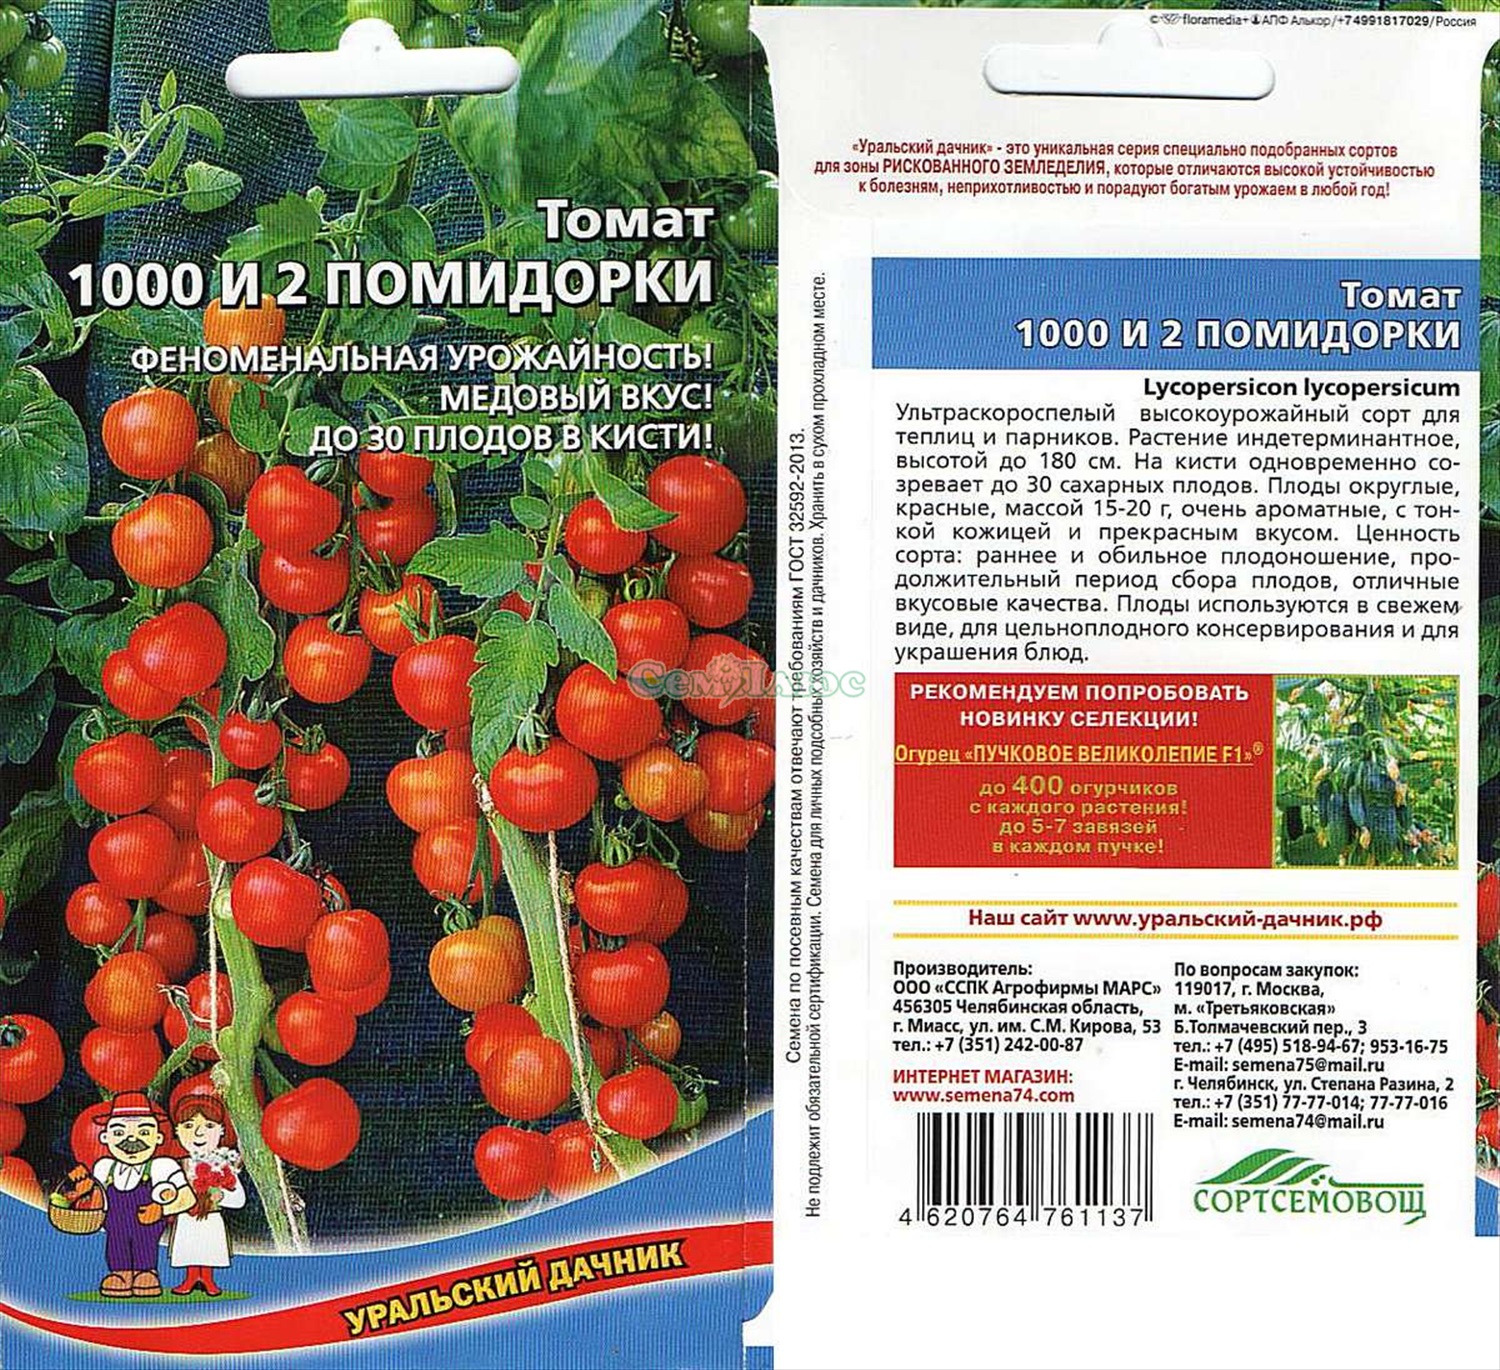 Сорта томатов для урала - для теплицы и открытого грунта